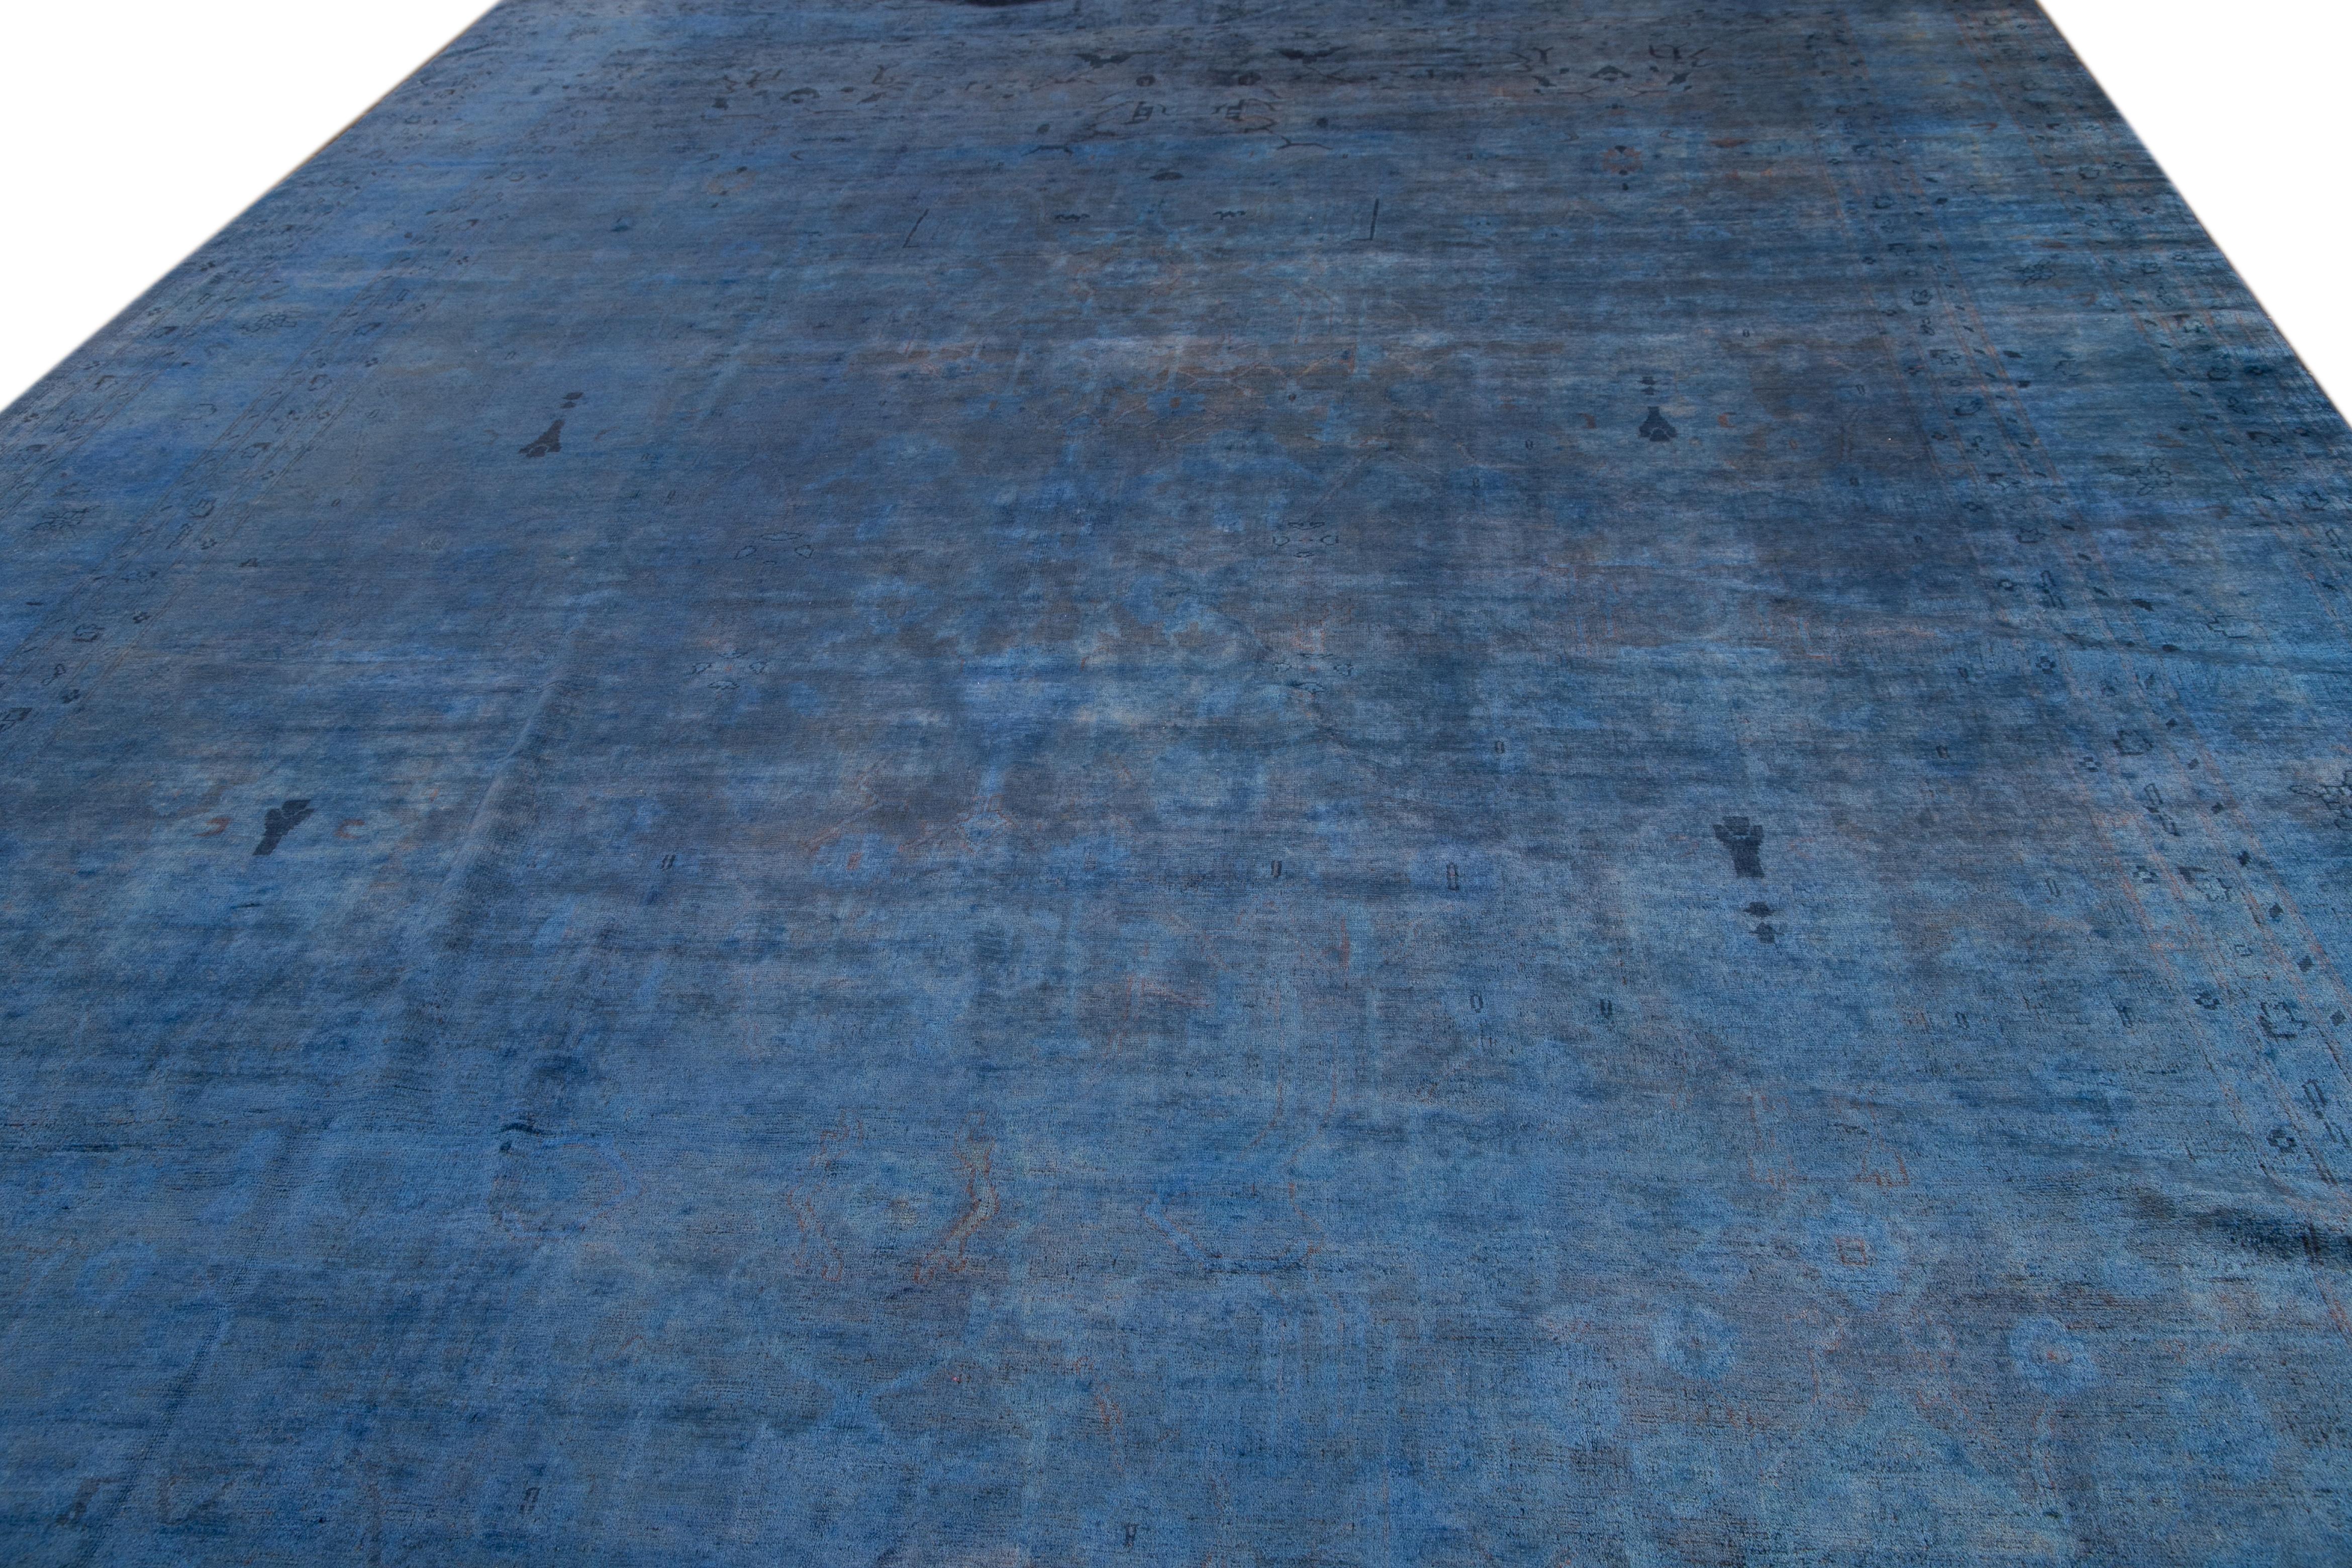 Dieser exquisite, modernisierte Overdyed-Teppich, der in Handarbeit aus hochwertiger Wolle gefertigt wurde, zeigt einen leuchtend blauen Untergrund mit einem prächtigen Classic-Motiv.

Dieser Teppich misst 12' 3